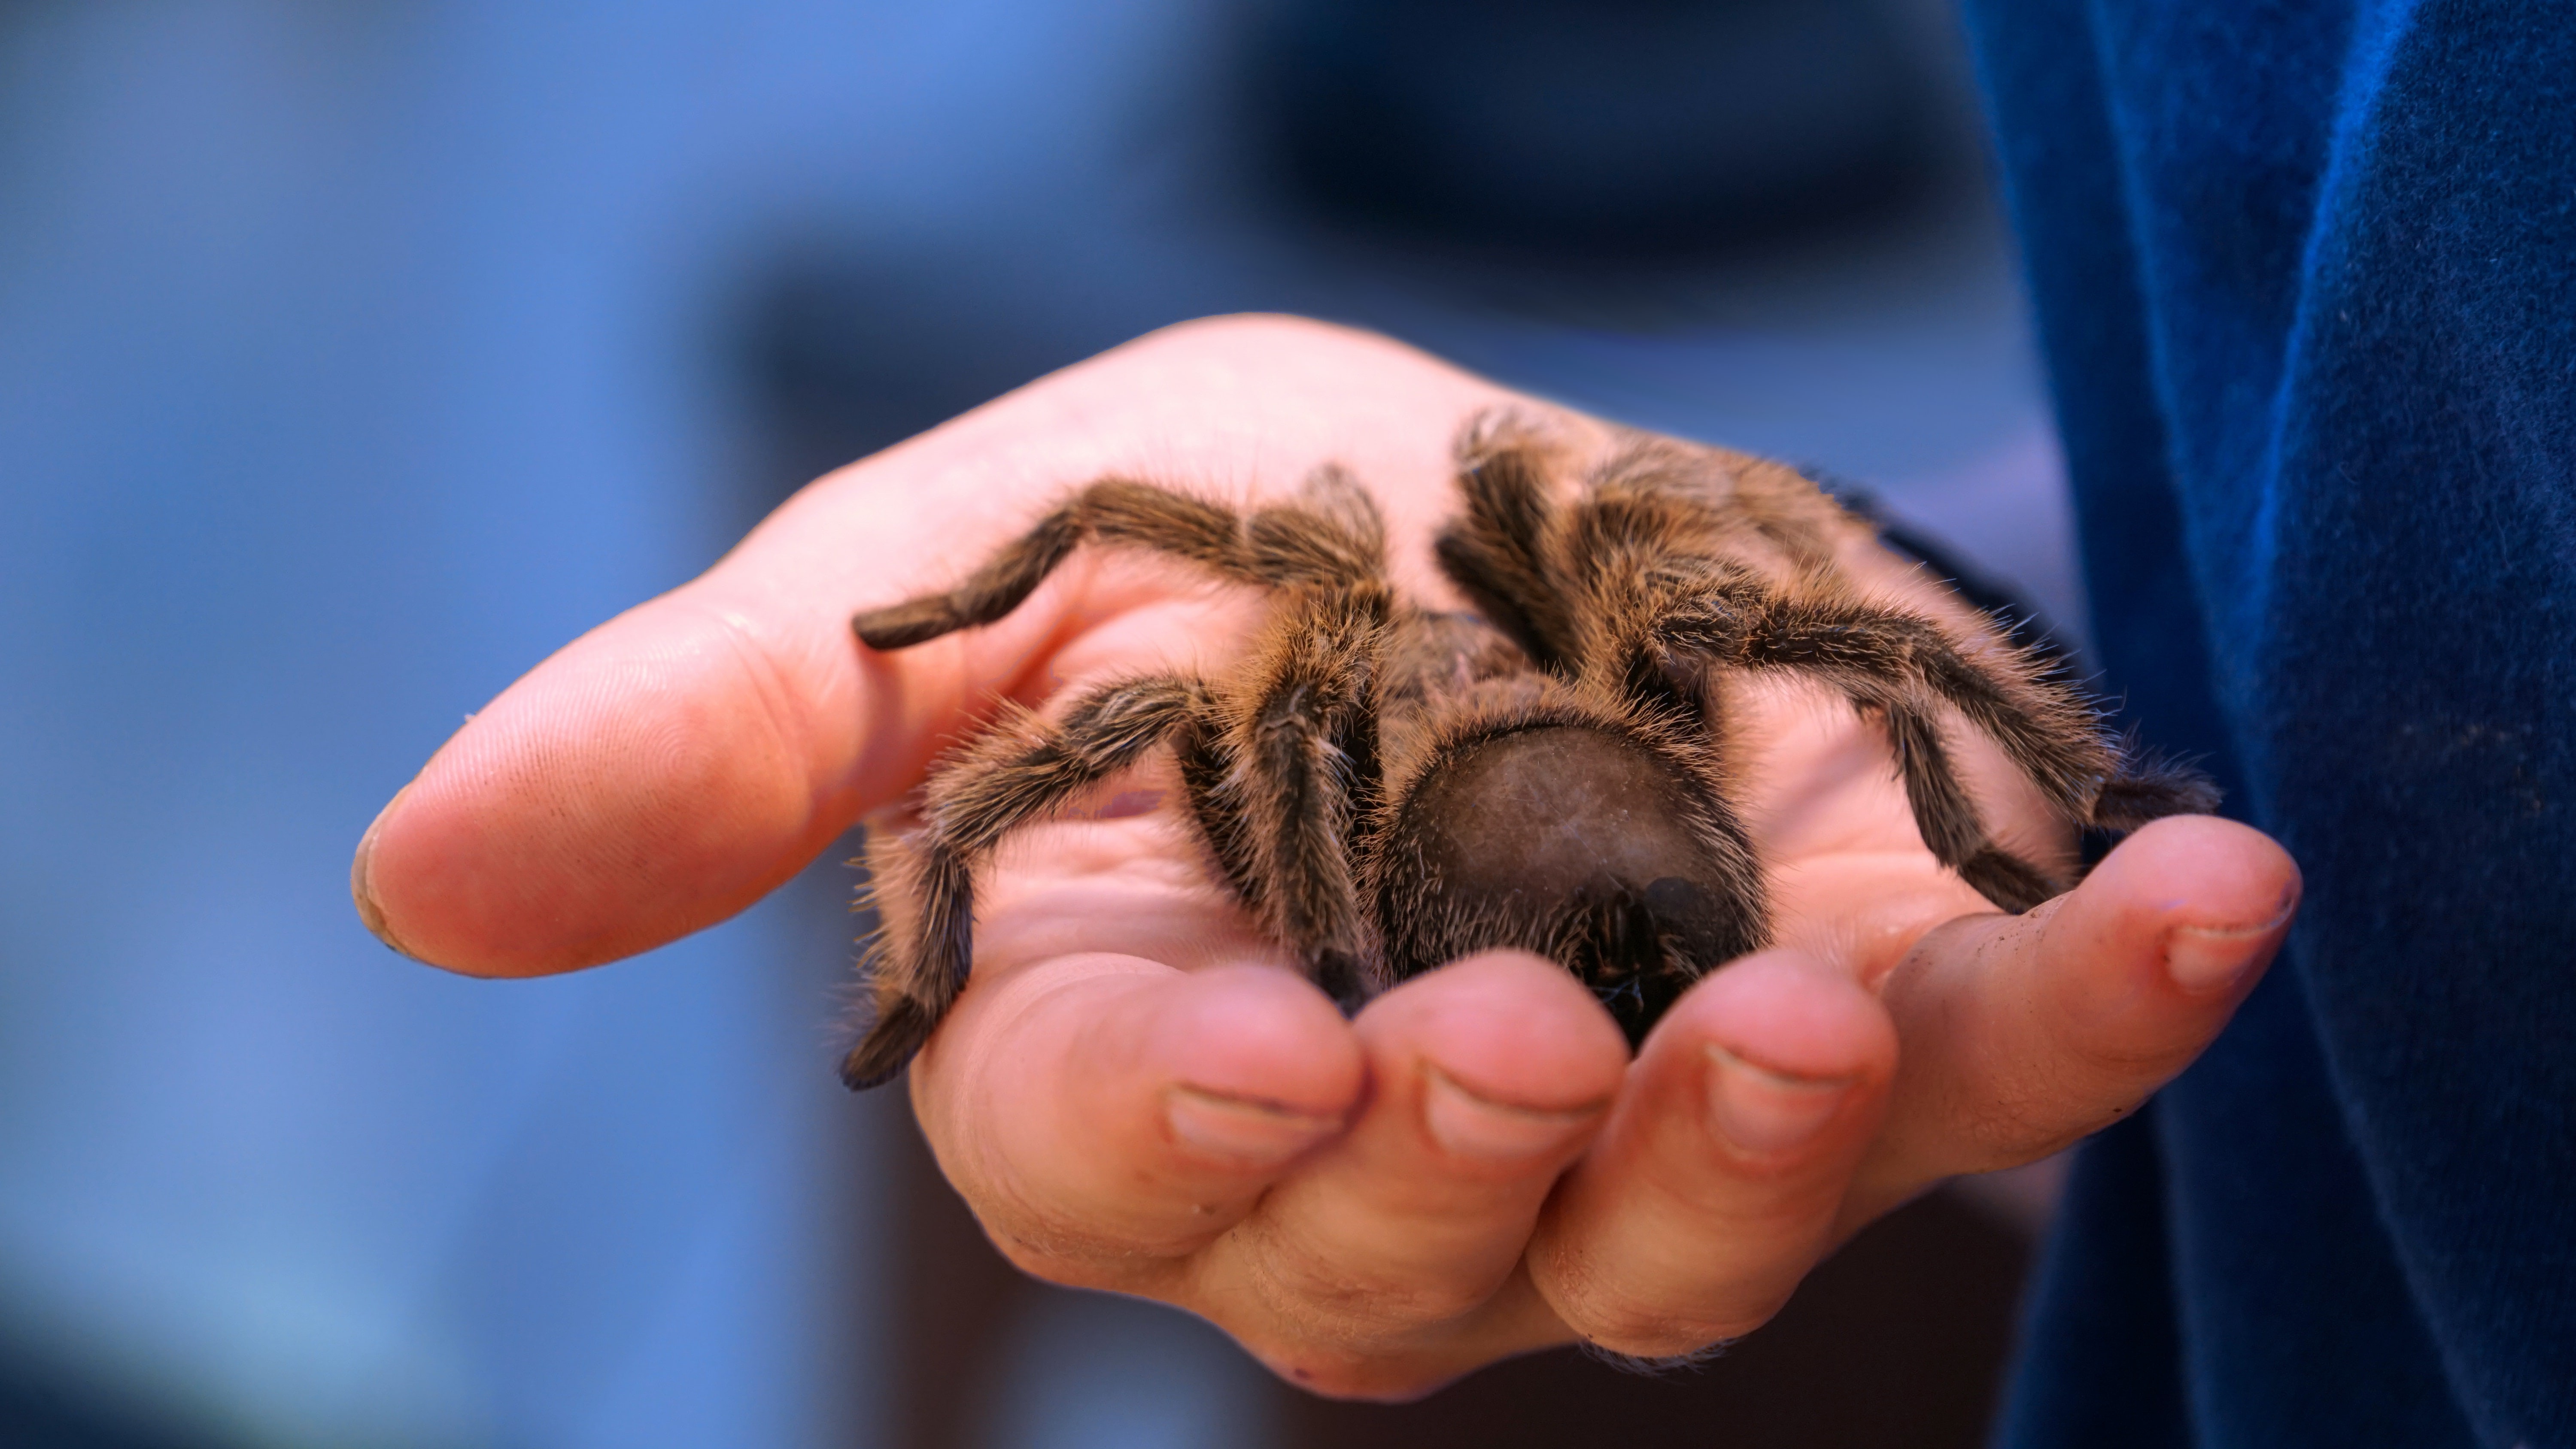 «Моя прелесссть»: 20 интересных фактов о домашних тарантулах (видео)